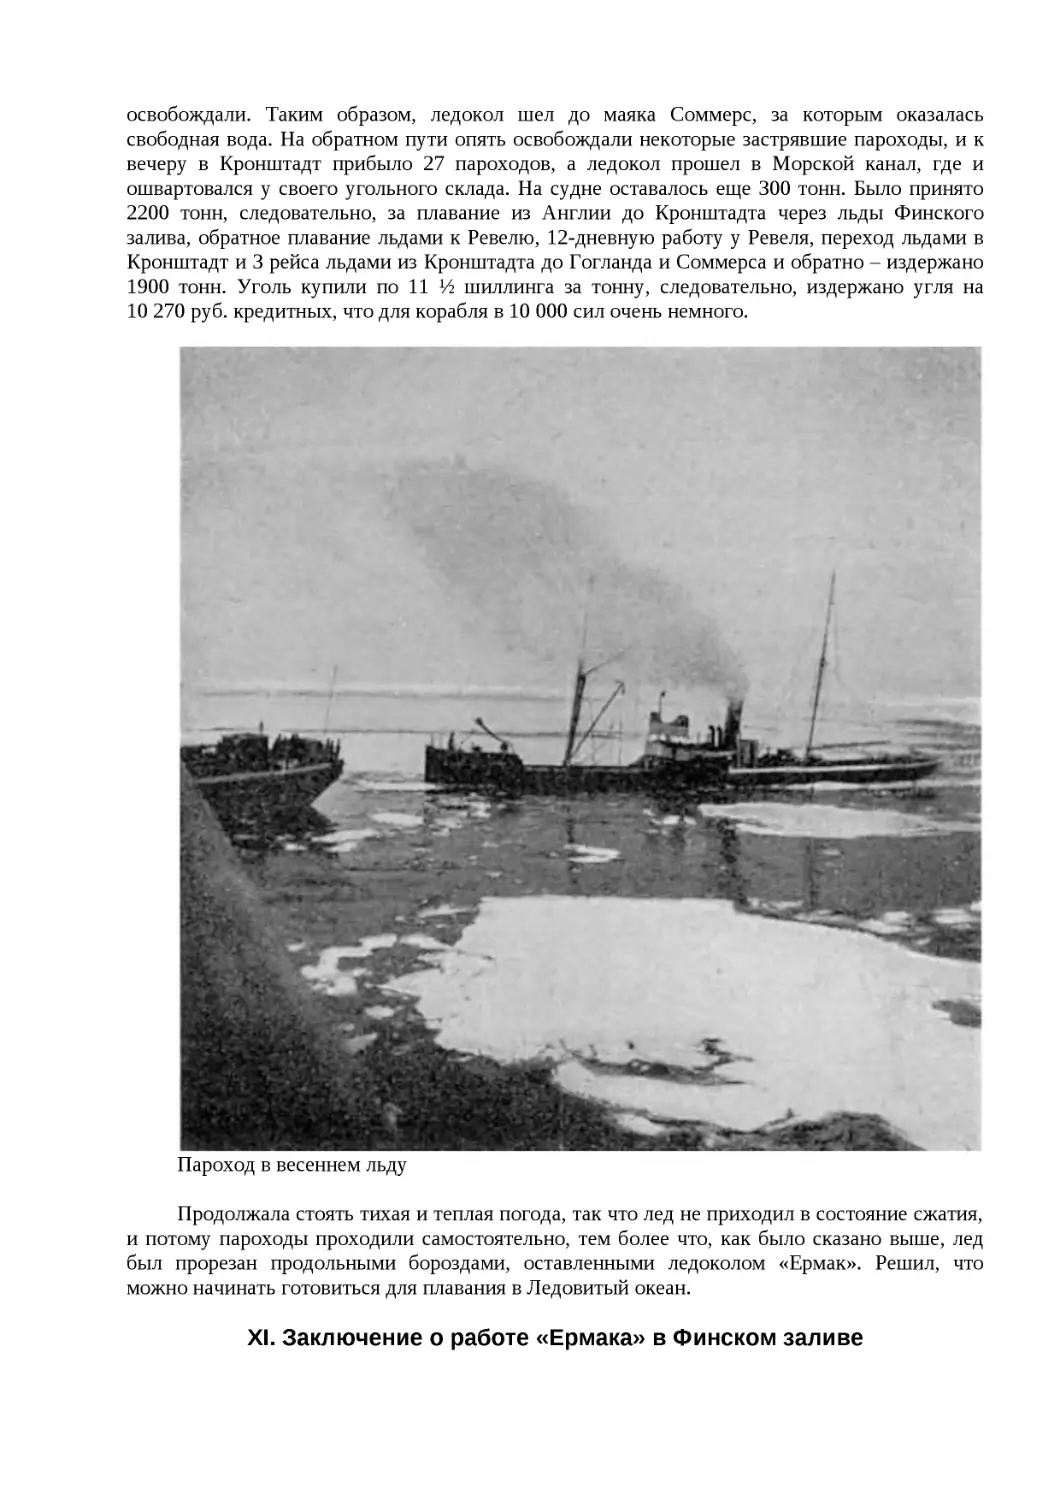 ﻿XI. Заключение о работе «Ермака» в Финском залив